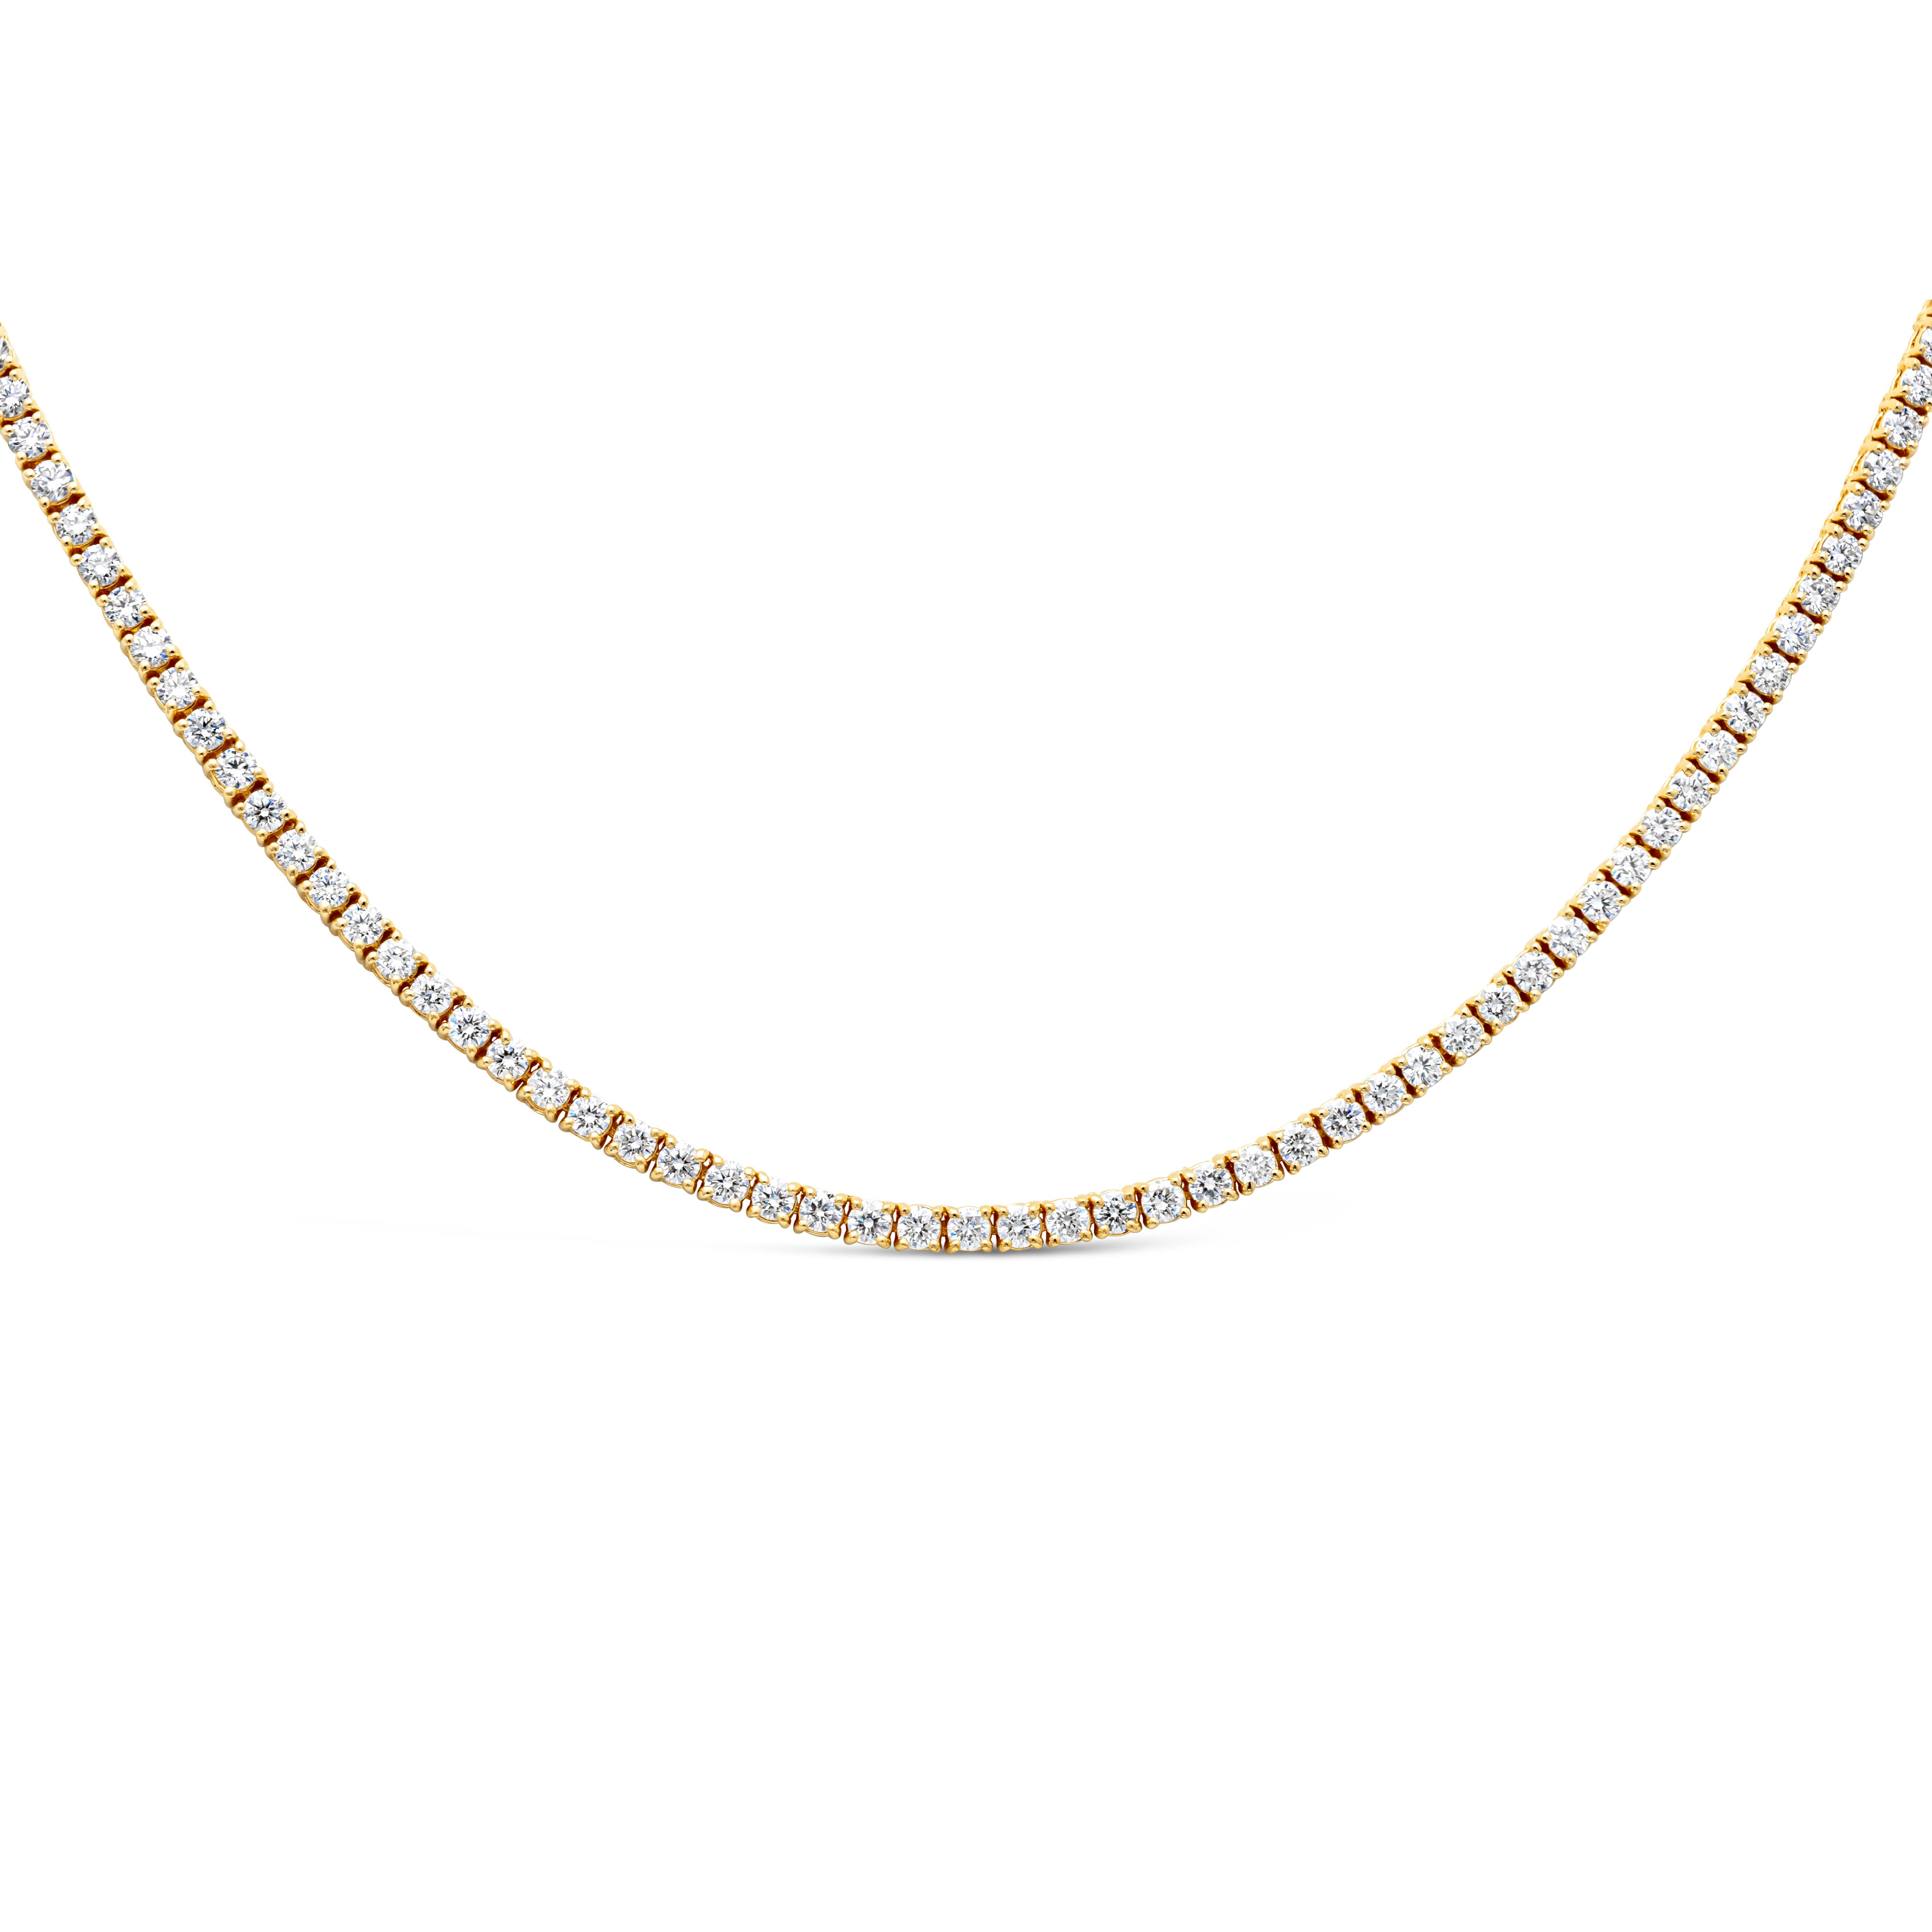 Eine klassische und zeitlose Tennis-Halskette mit einer Reihe von 168 runden Brillanten von insgesamt 6,89 Karat, Farbe F und Reinheit SI. Set in vier Zacken 14K Gelbgold Fassung, 17 Zoll in der Länge. 

Roman Malakov ist ein Unternehmen, das sich